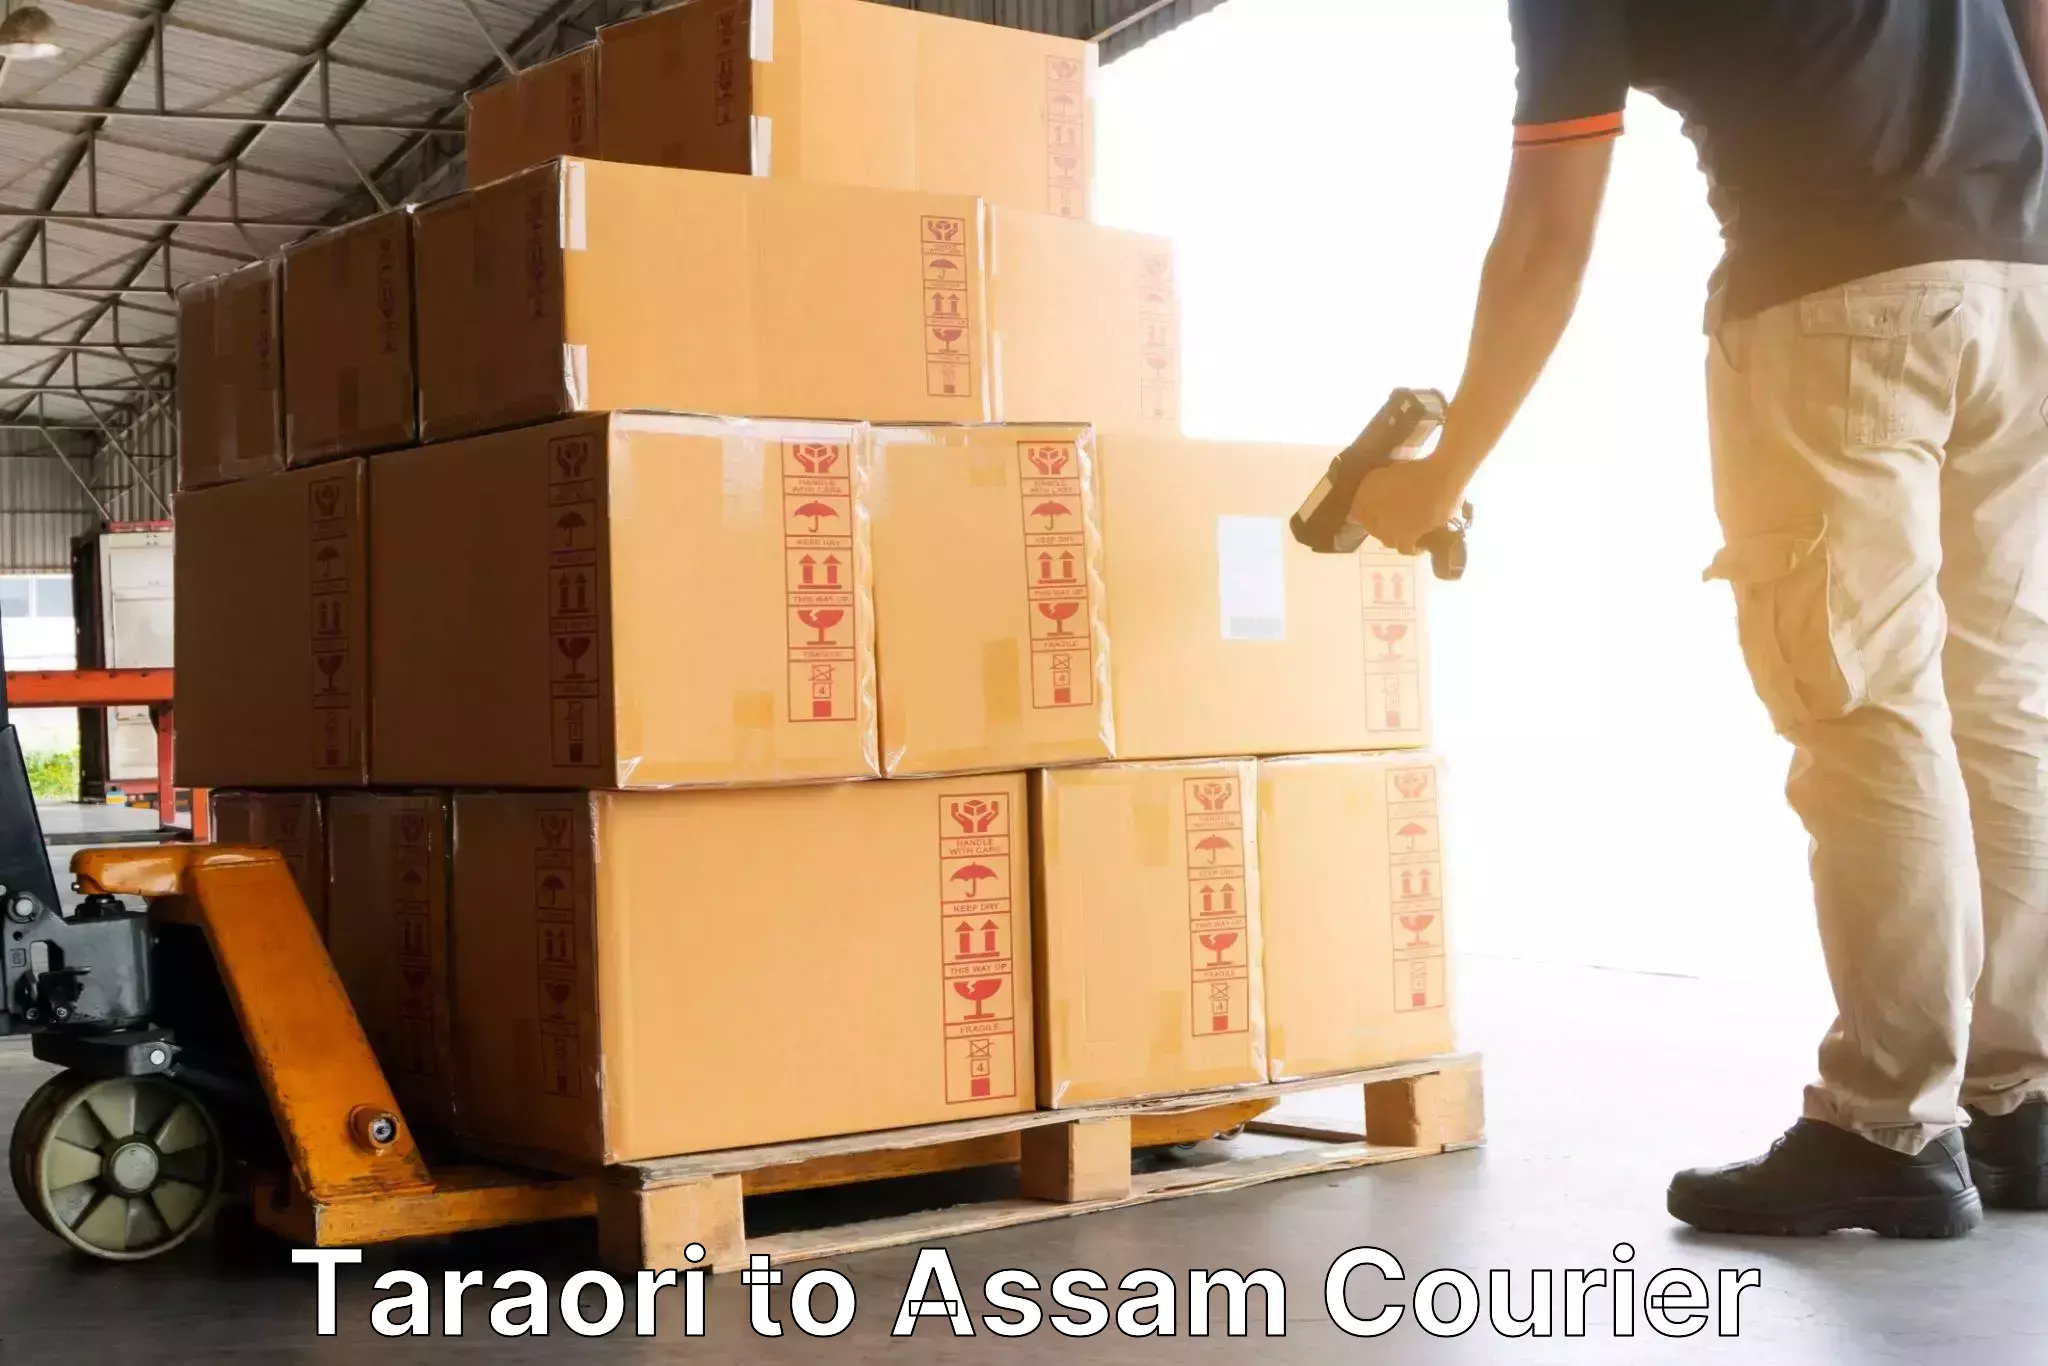 Cost-effective courier options Taraori to Agomani